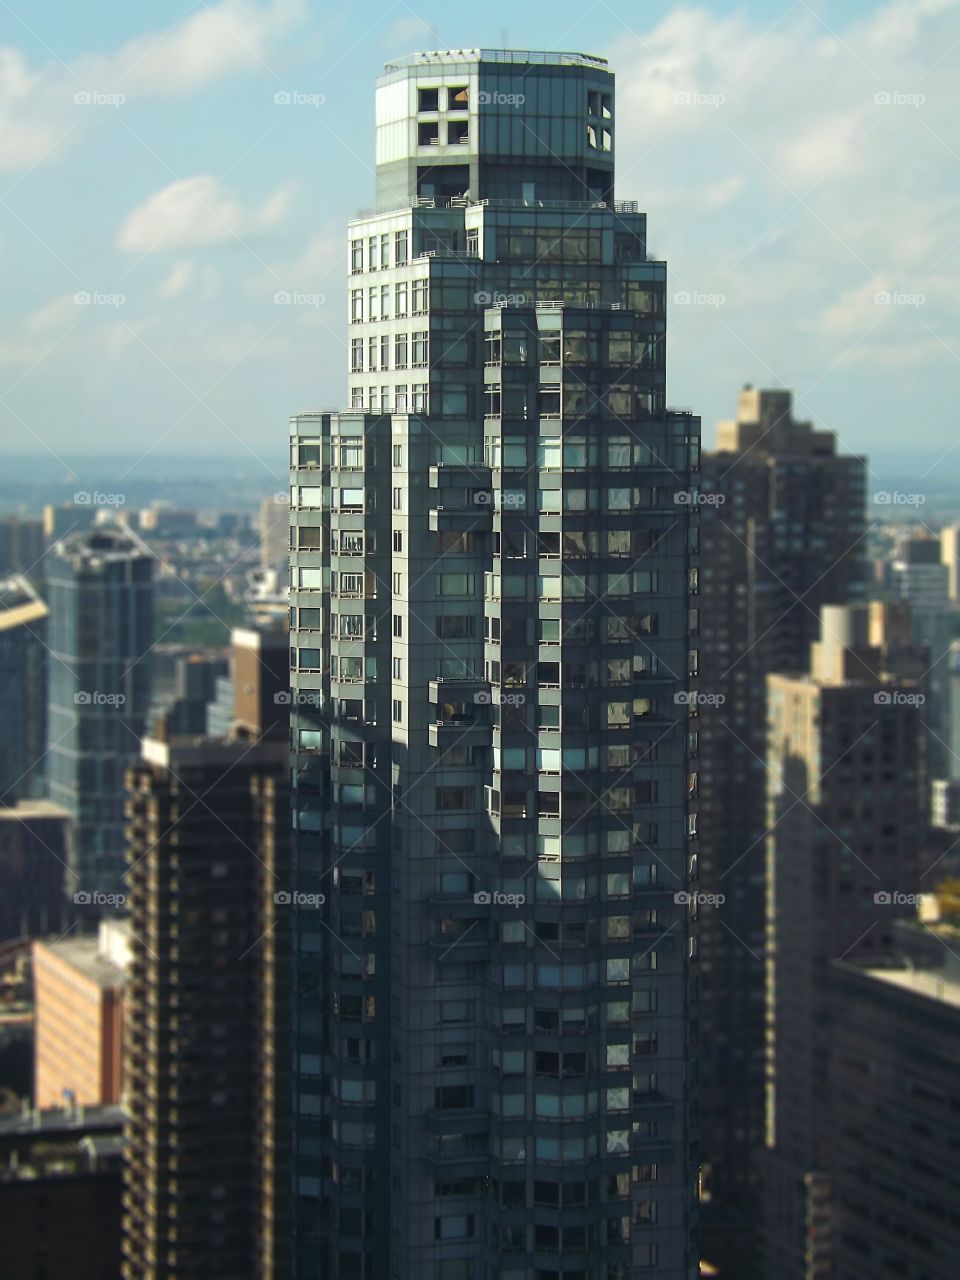 Building in Manhattan 